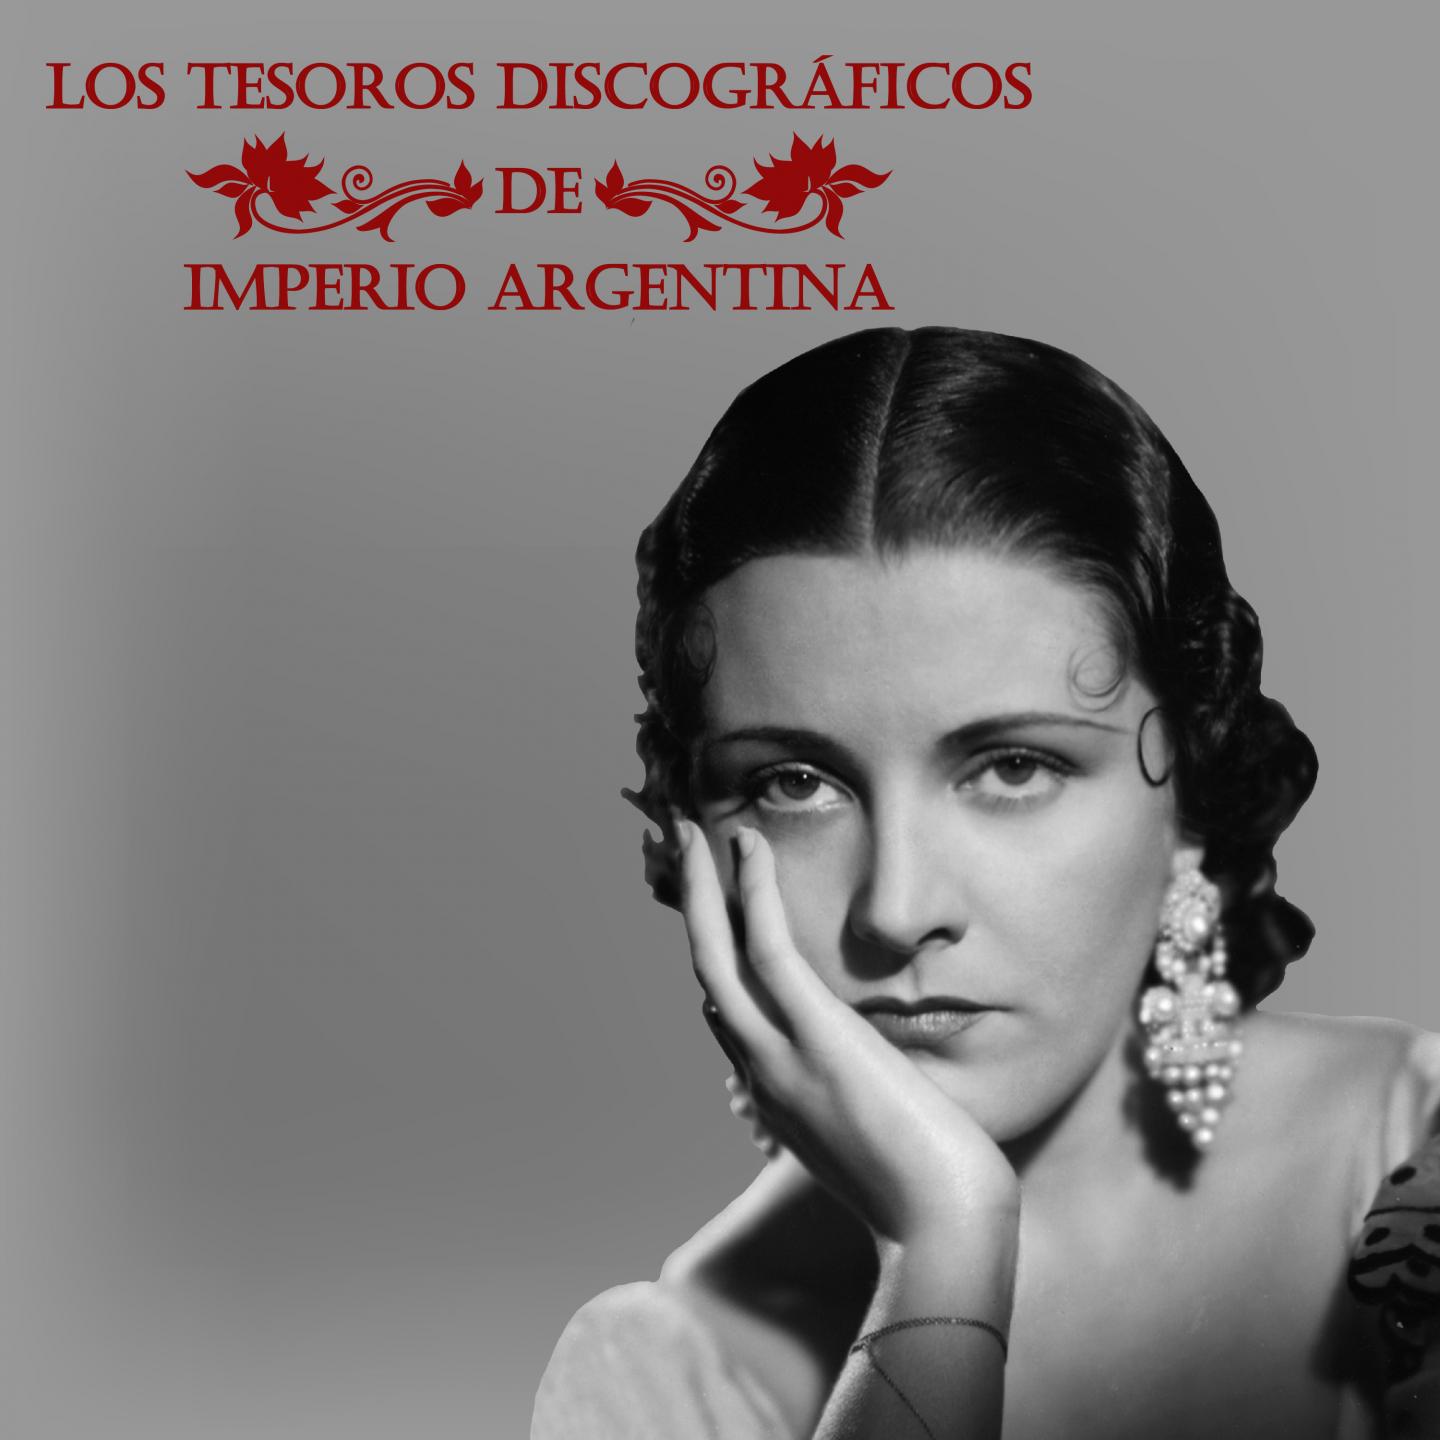 Los Tesoros Discogra ficos de Impero Argentina